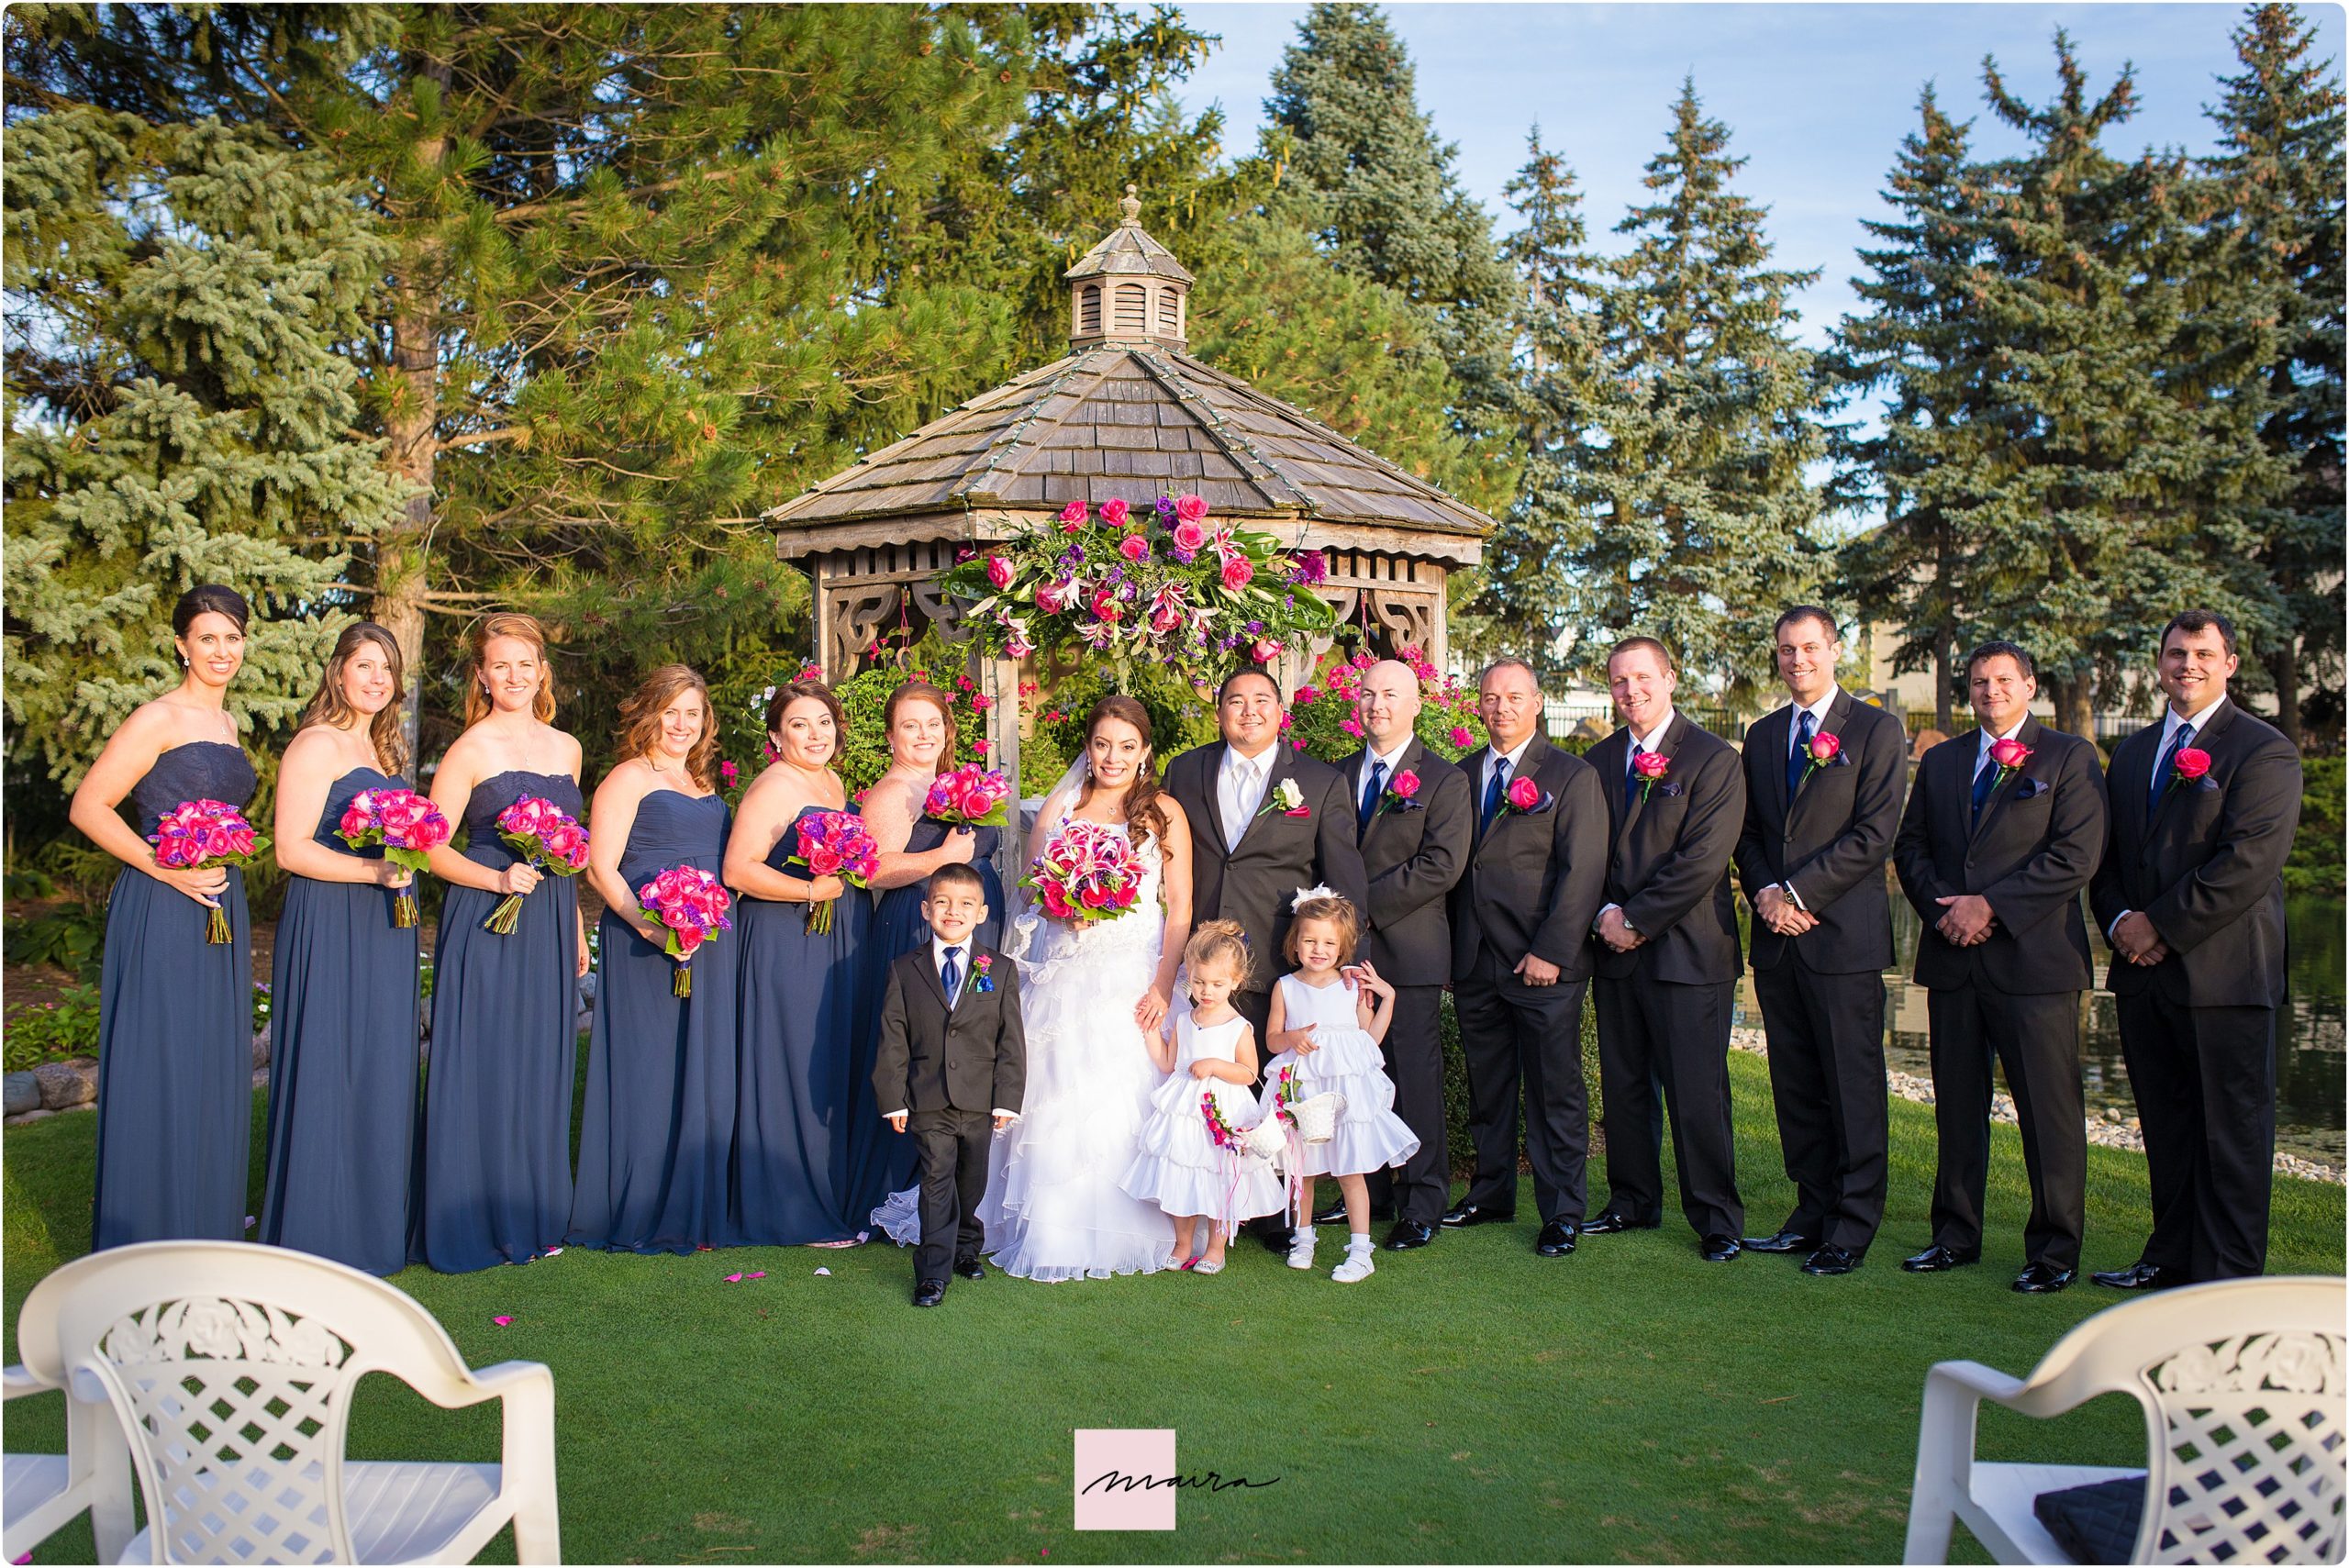 Wedgewood weddings Northshore, Bride and Groom, wedding ceremony, bride and groom portrait , bridal party